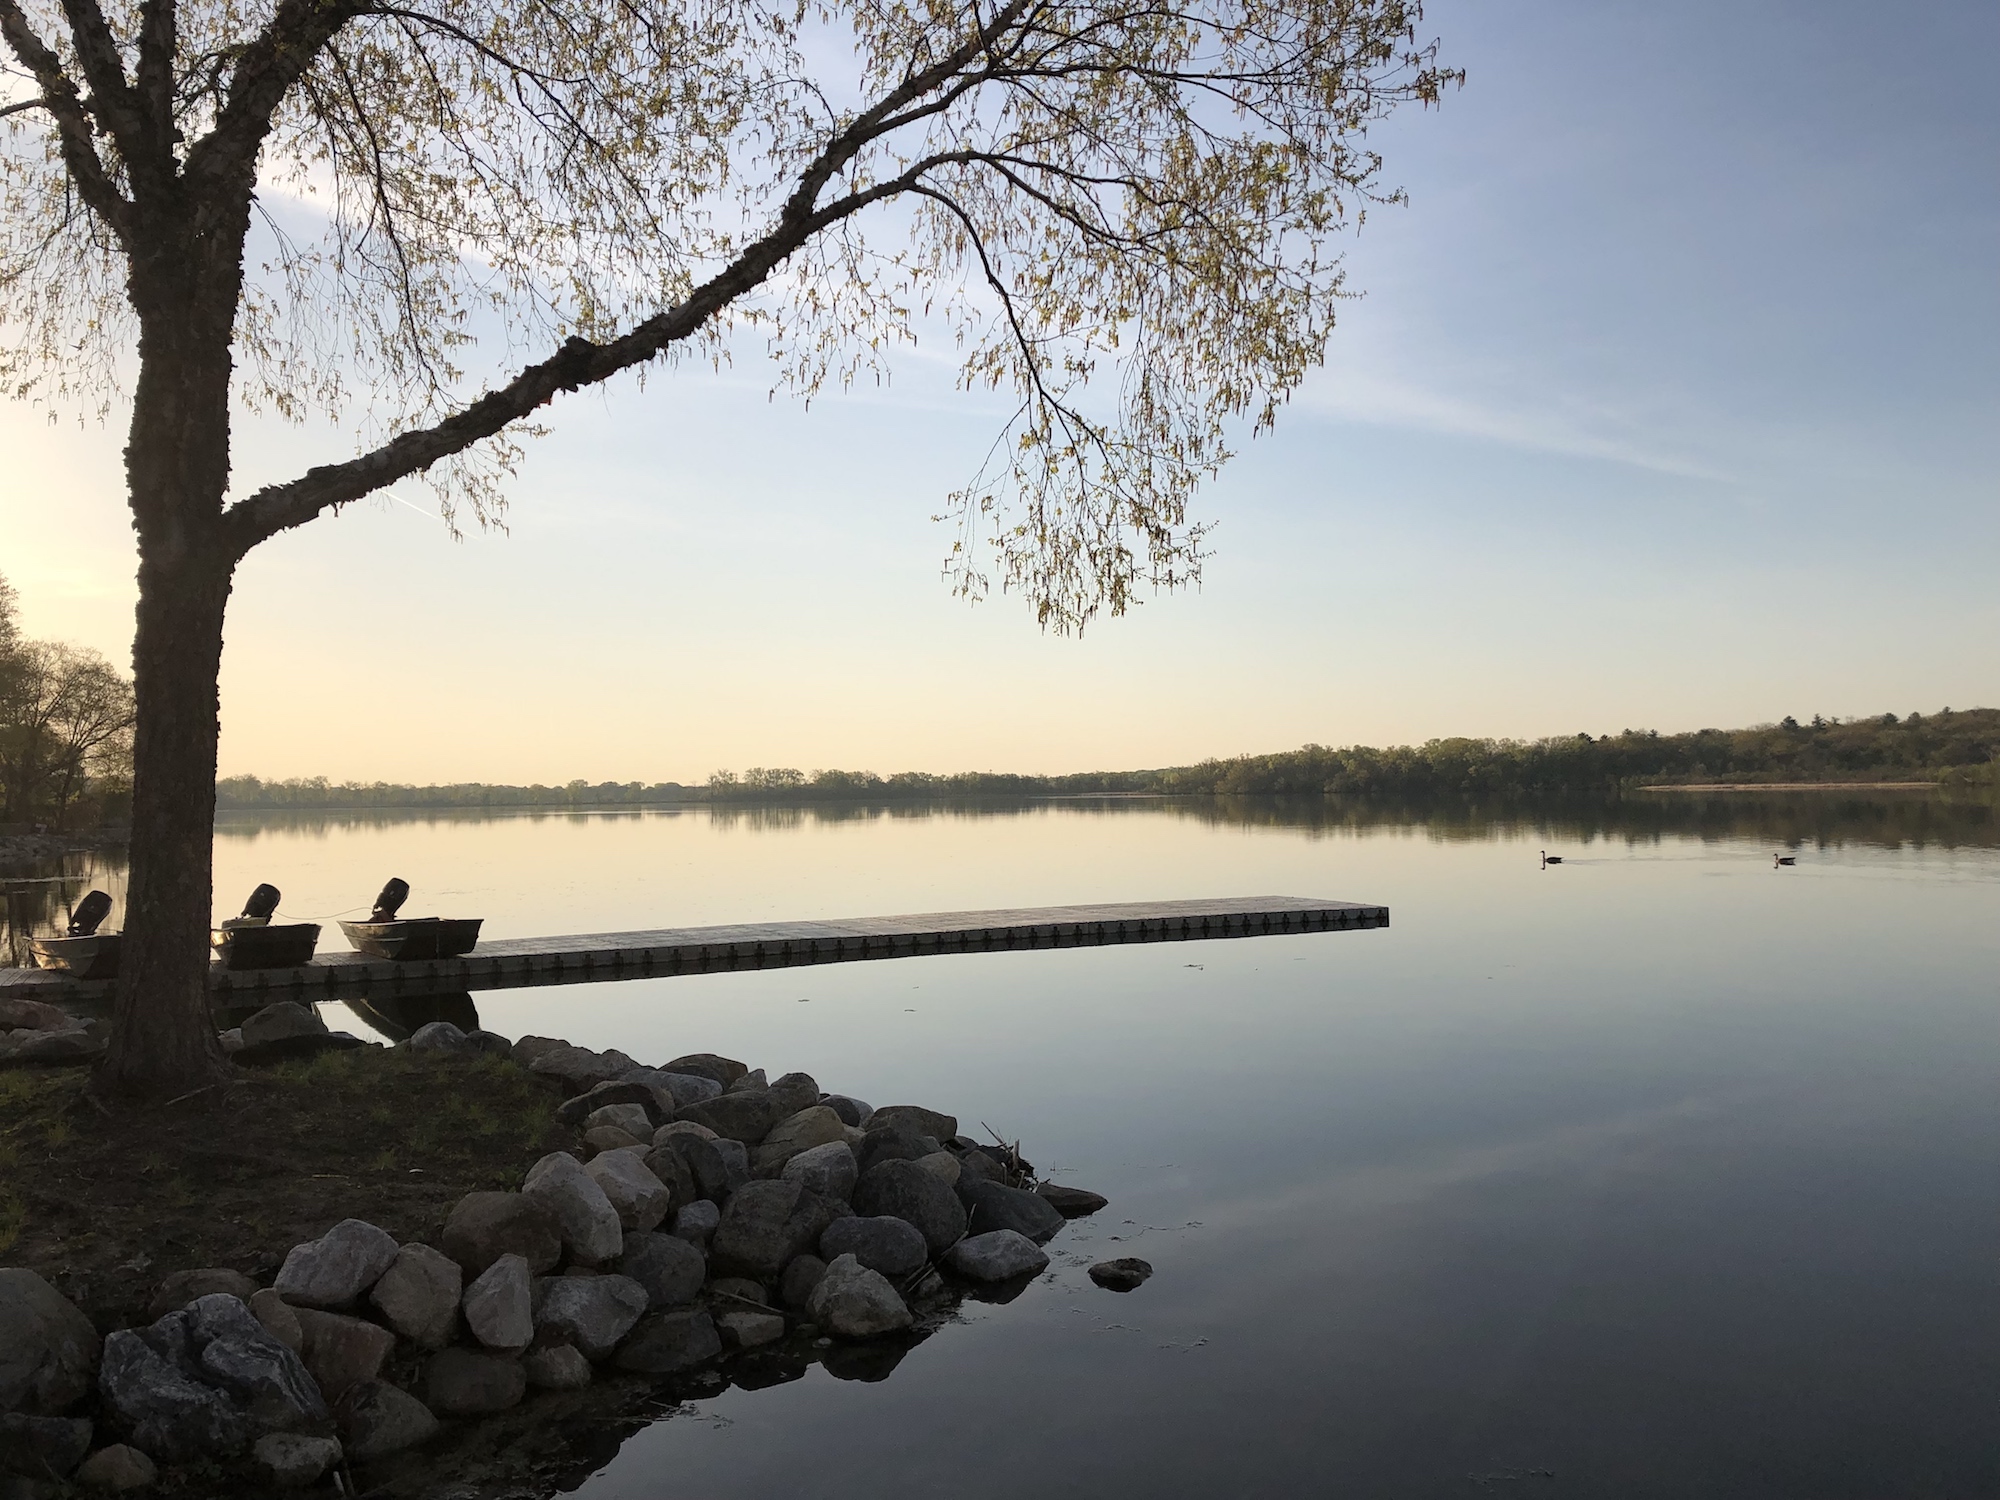 Lake Wingra on May 14, 2019.